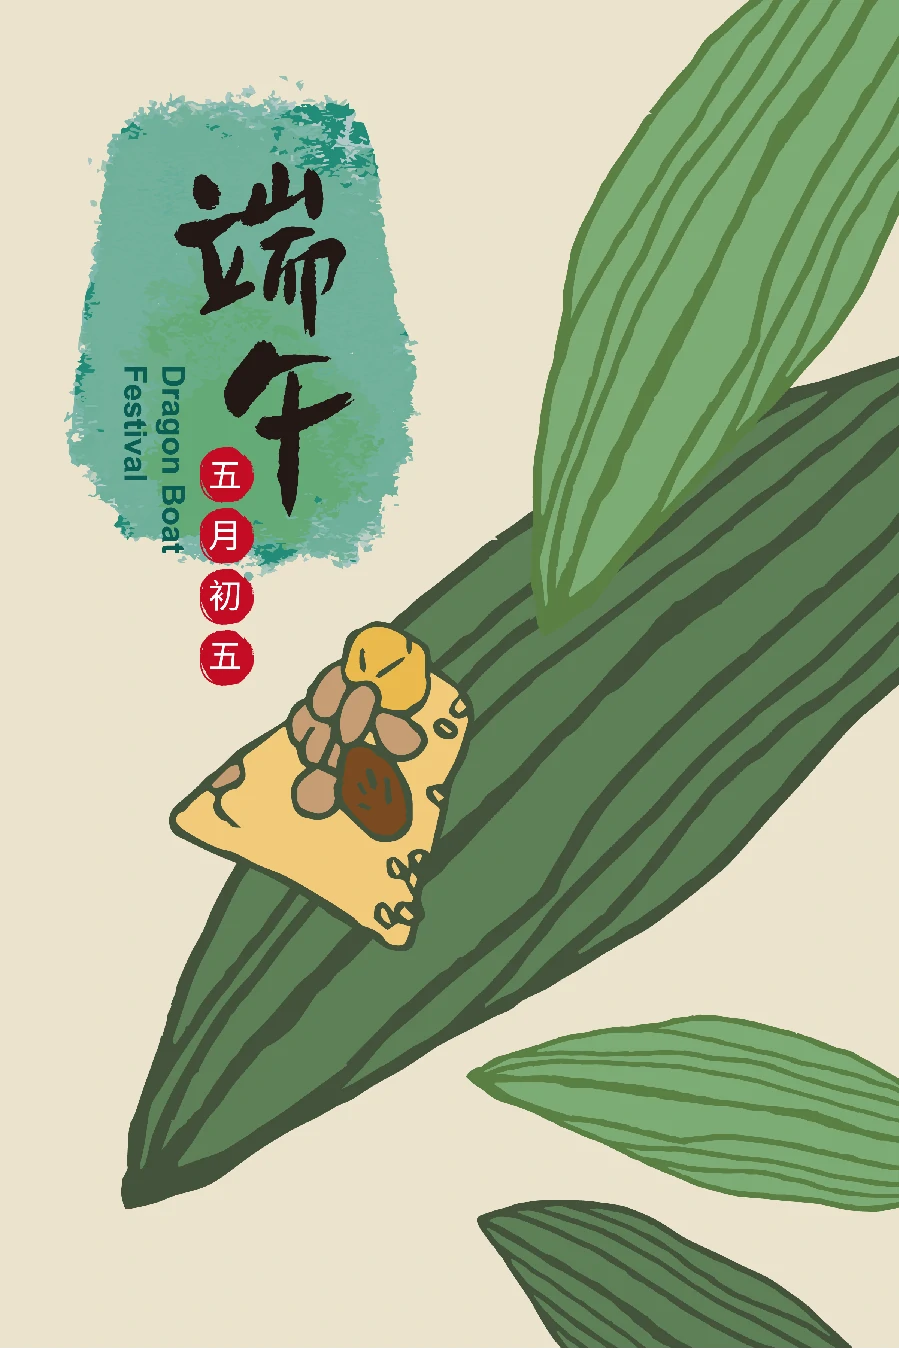 中国风传统节日端午节屈原划龙舟包粽子节日插画海报AI矢量素材【011】